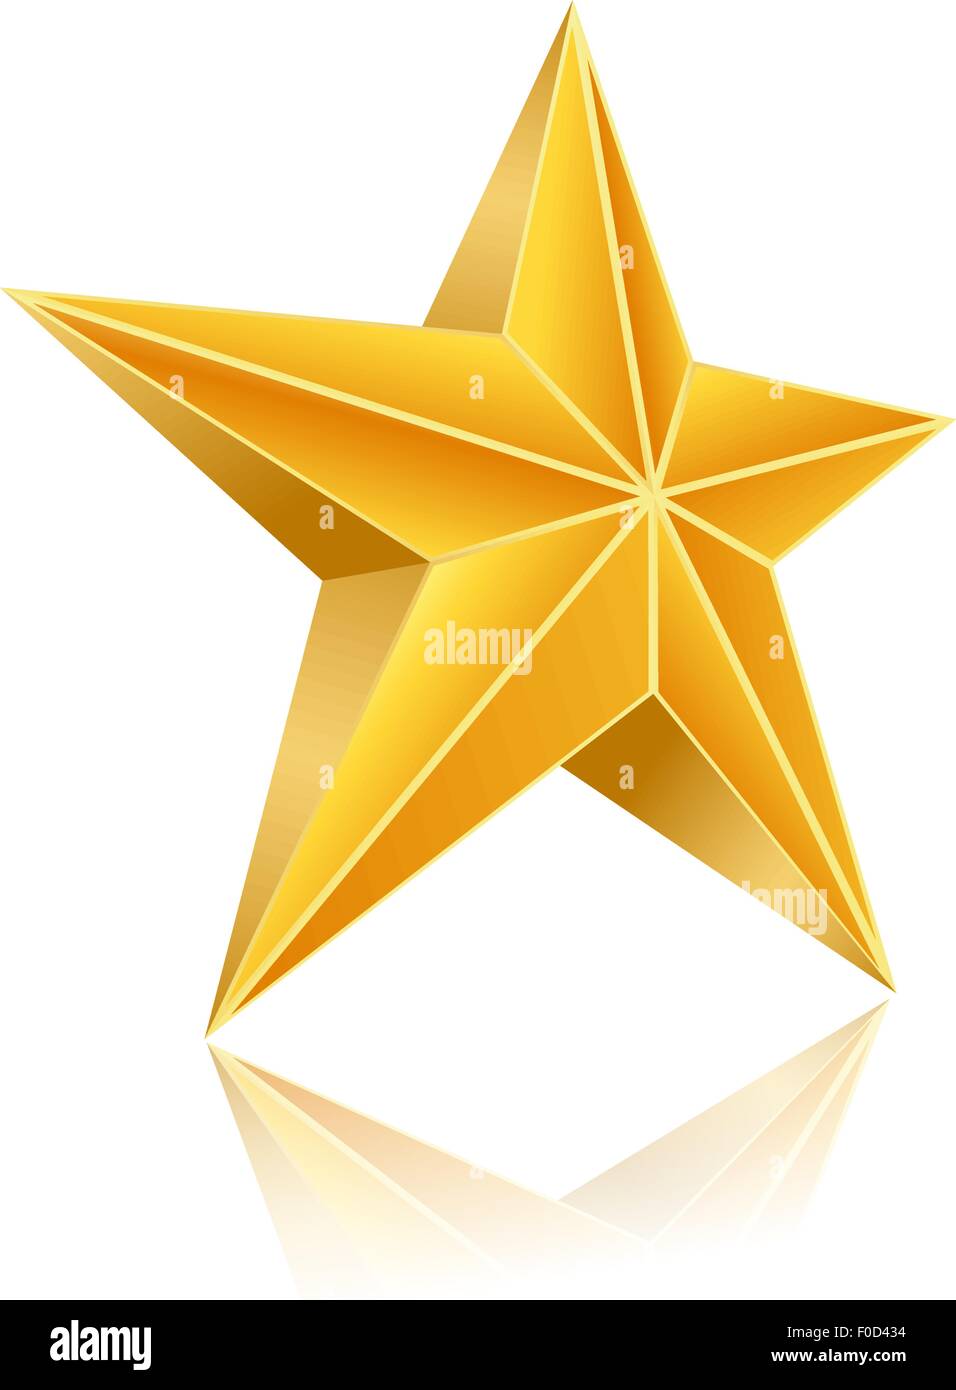 golden five corner star on white background Stock Vector